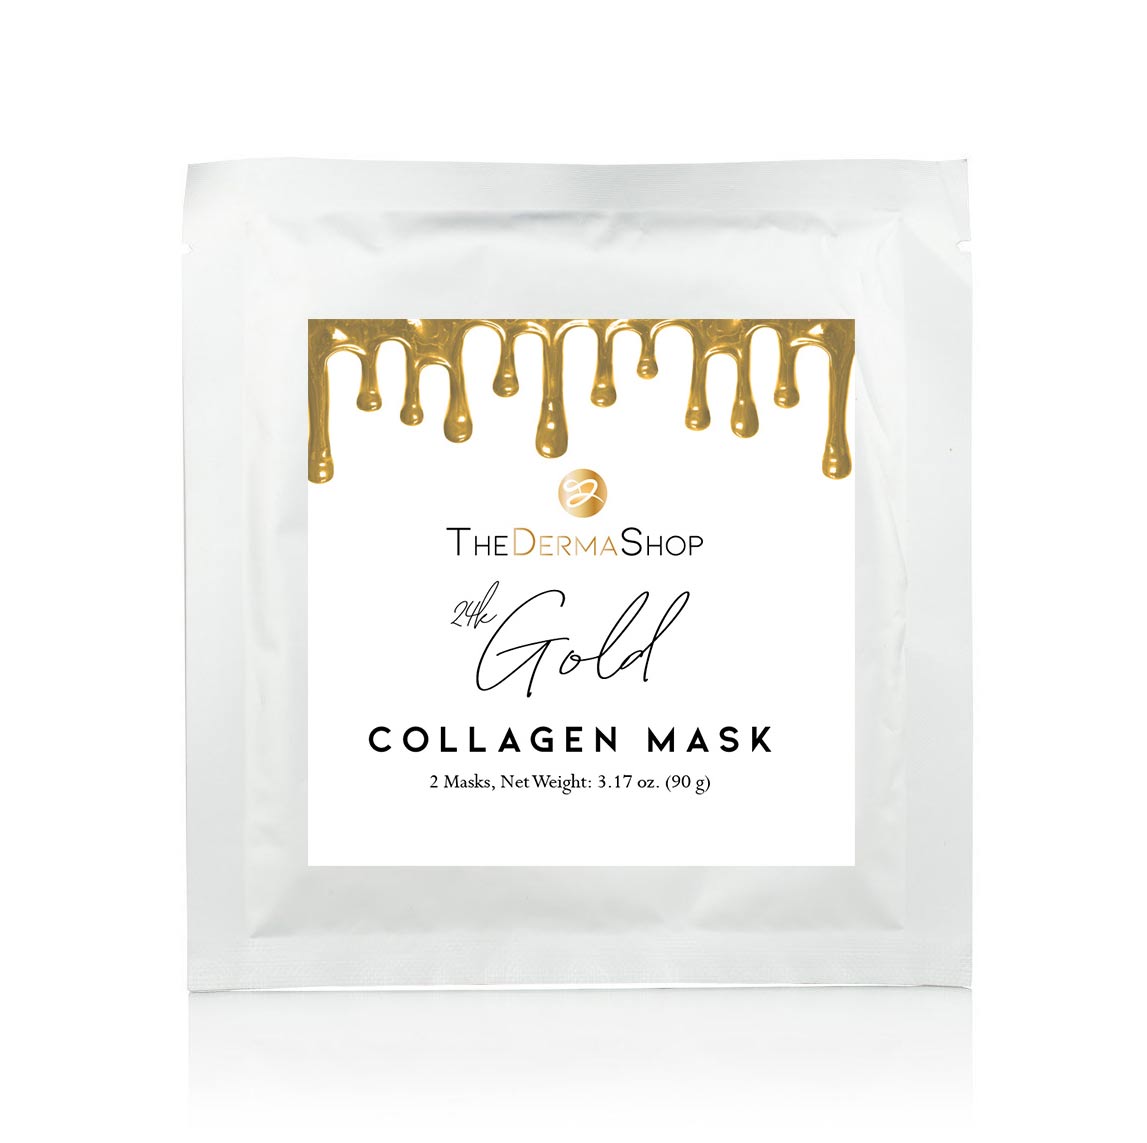 TheDermaShop 24k Gold Collagen Mask